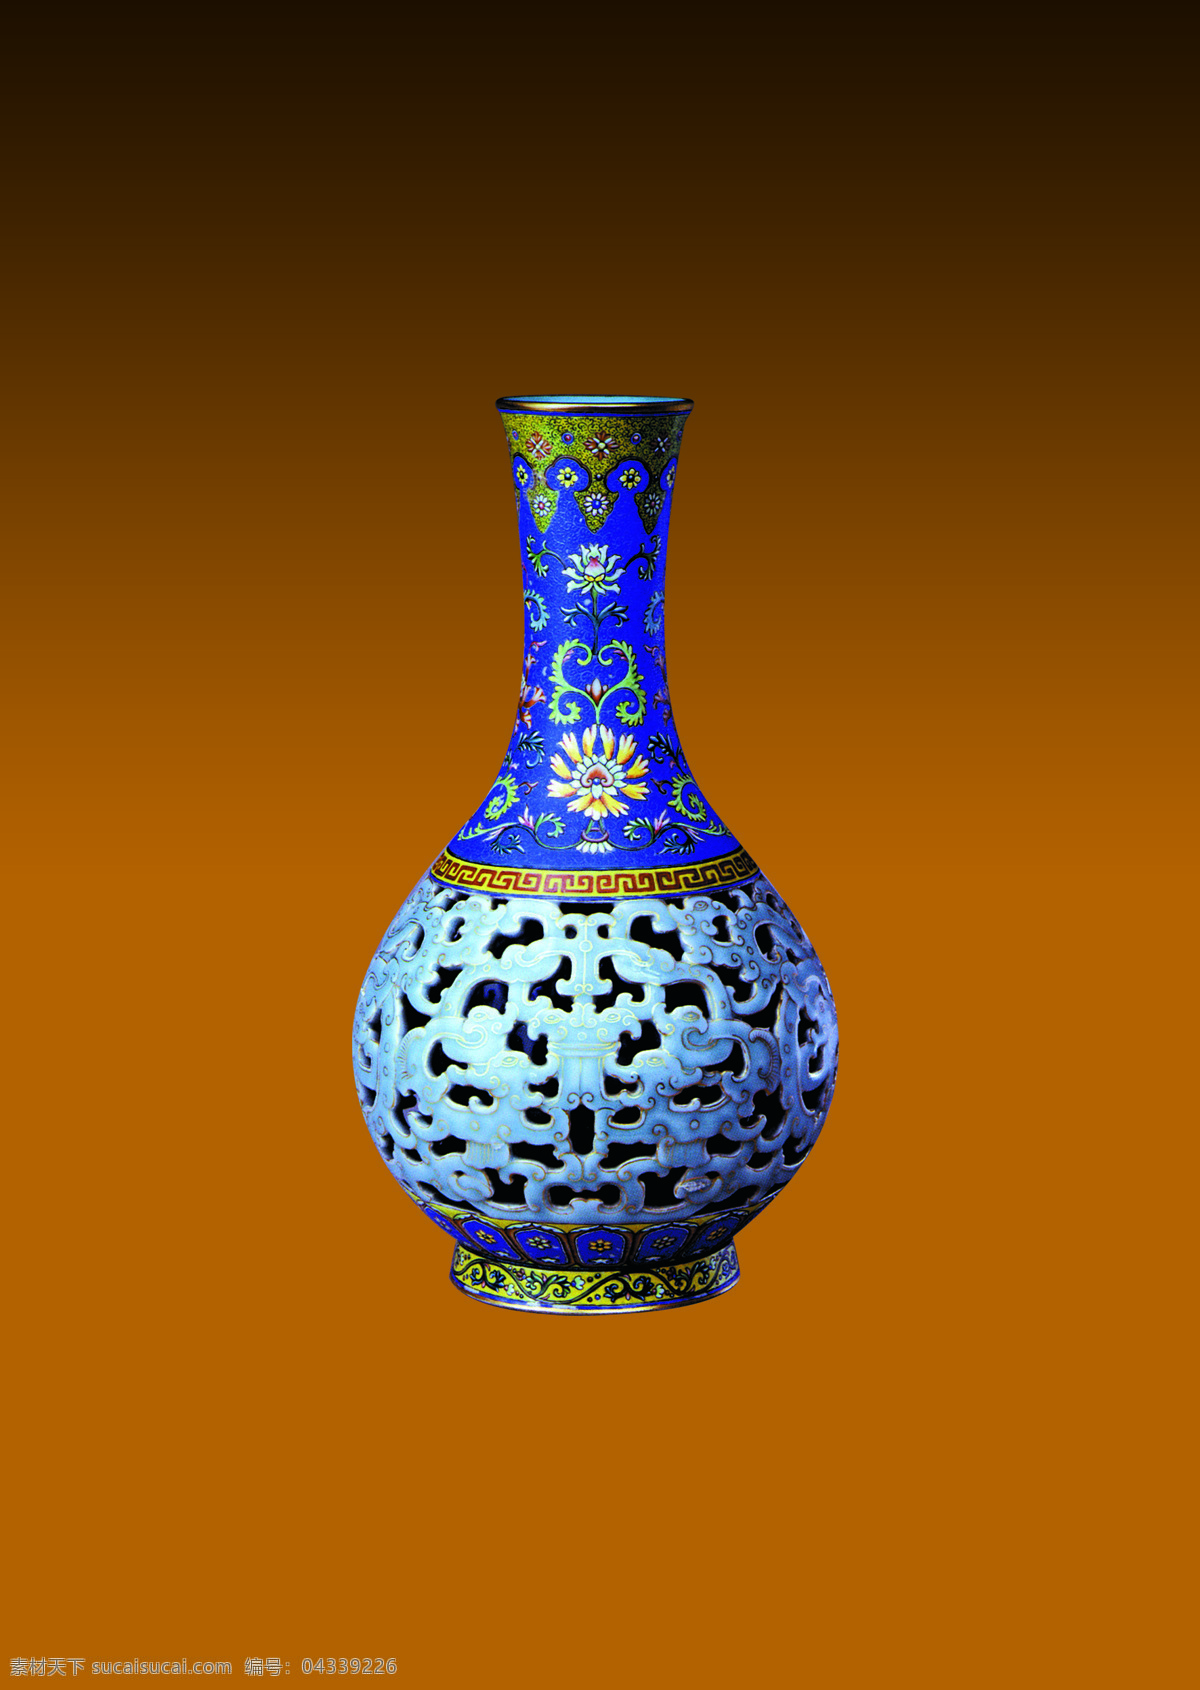 工艺品 摆件 礼物 艺术花瓶 花瓶 花瓶摄影 工艺花瓶 文艺花瓶 古典花瓶 文化艺术 传统文化